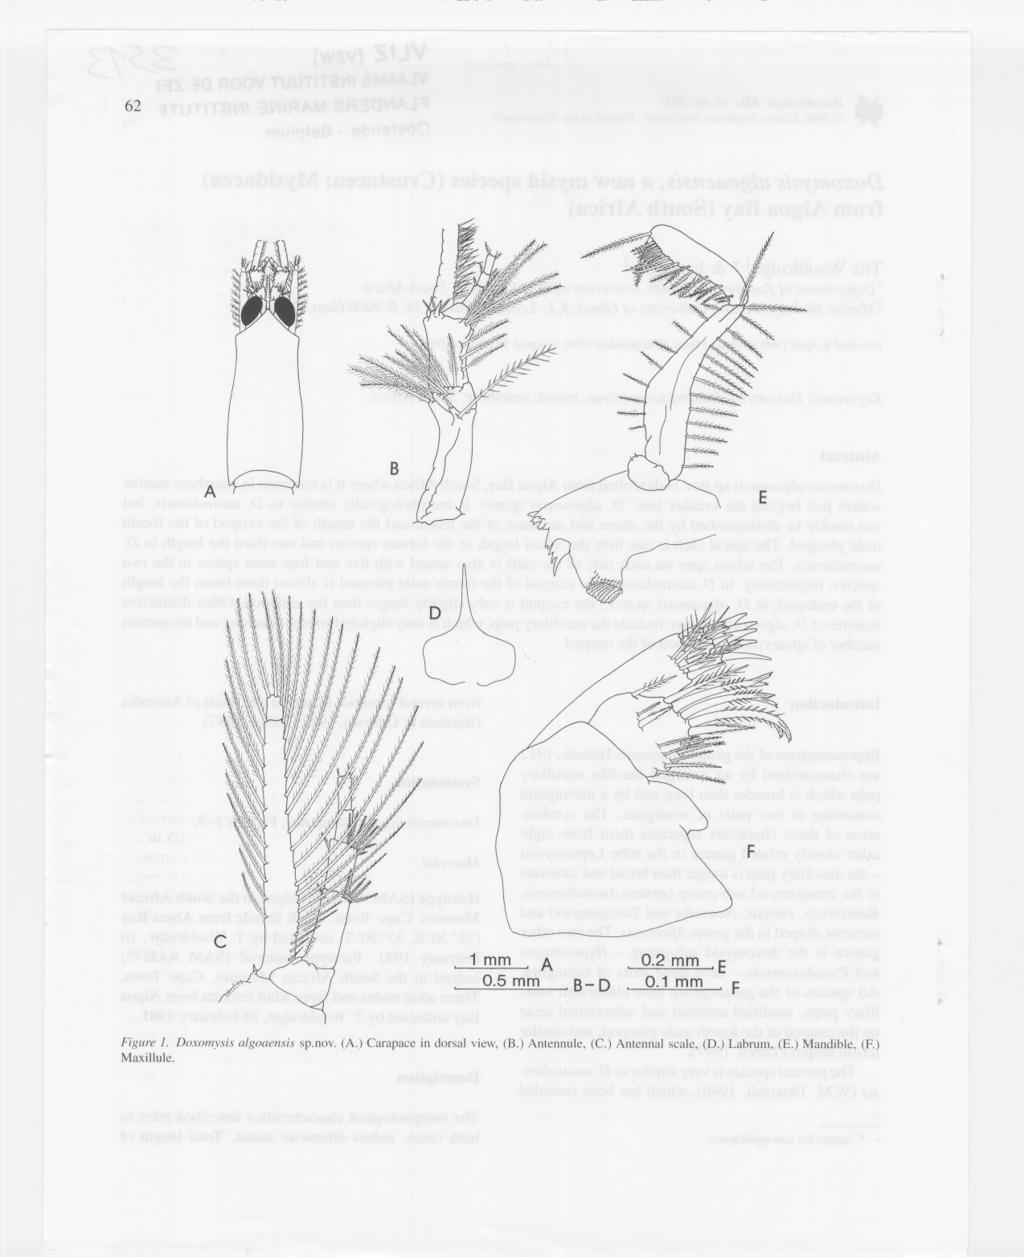 62 A 1 mm A 0.5mm B-D 0.2mm 0.1 mm E F Figure 1. Doxomysis algoaensis sp.nov. (A.